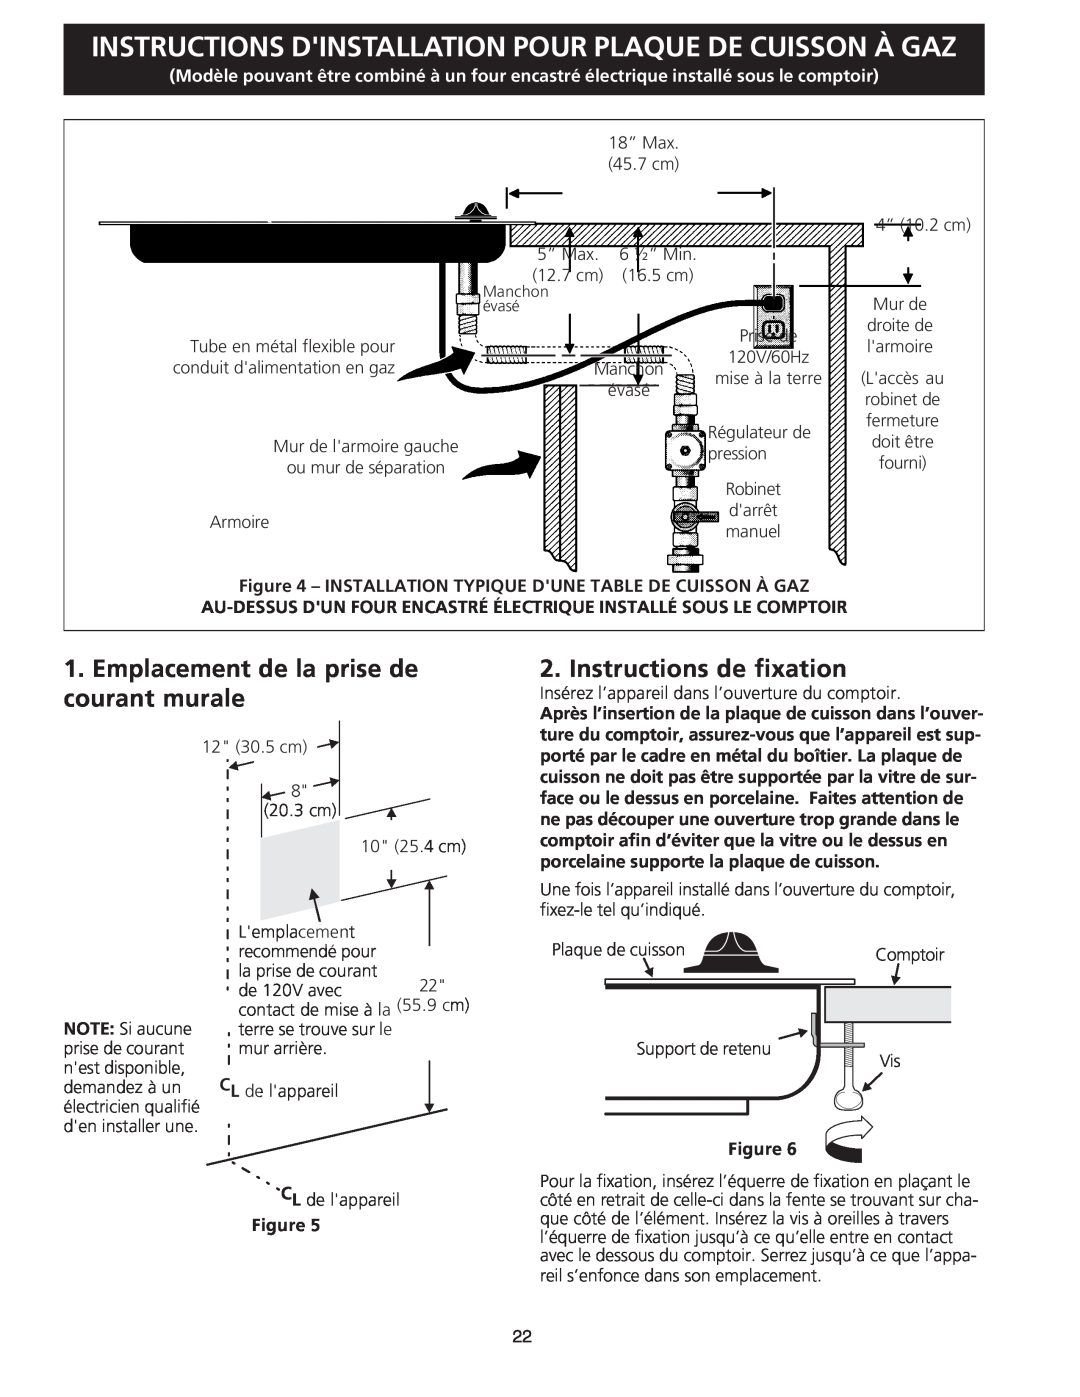 Frigidaire FGC36S5EC dimensions Emplacement de la prise de courant murale, Instructions de fixation, Plaque De Cuisson 